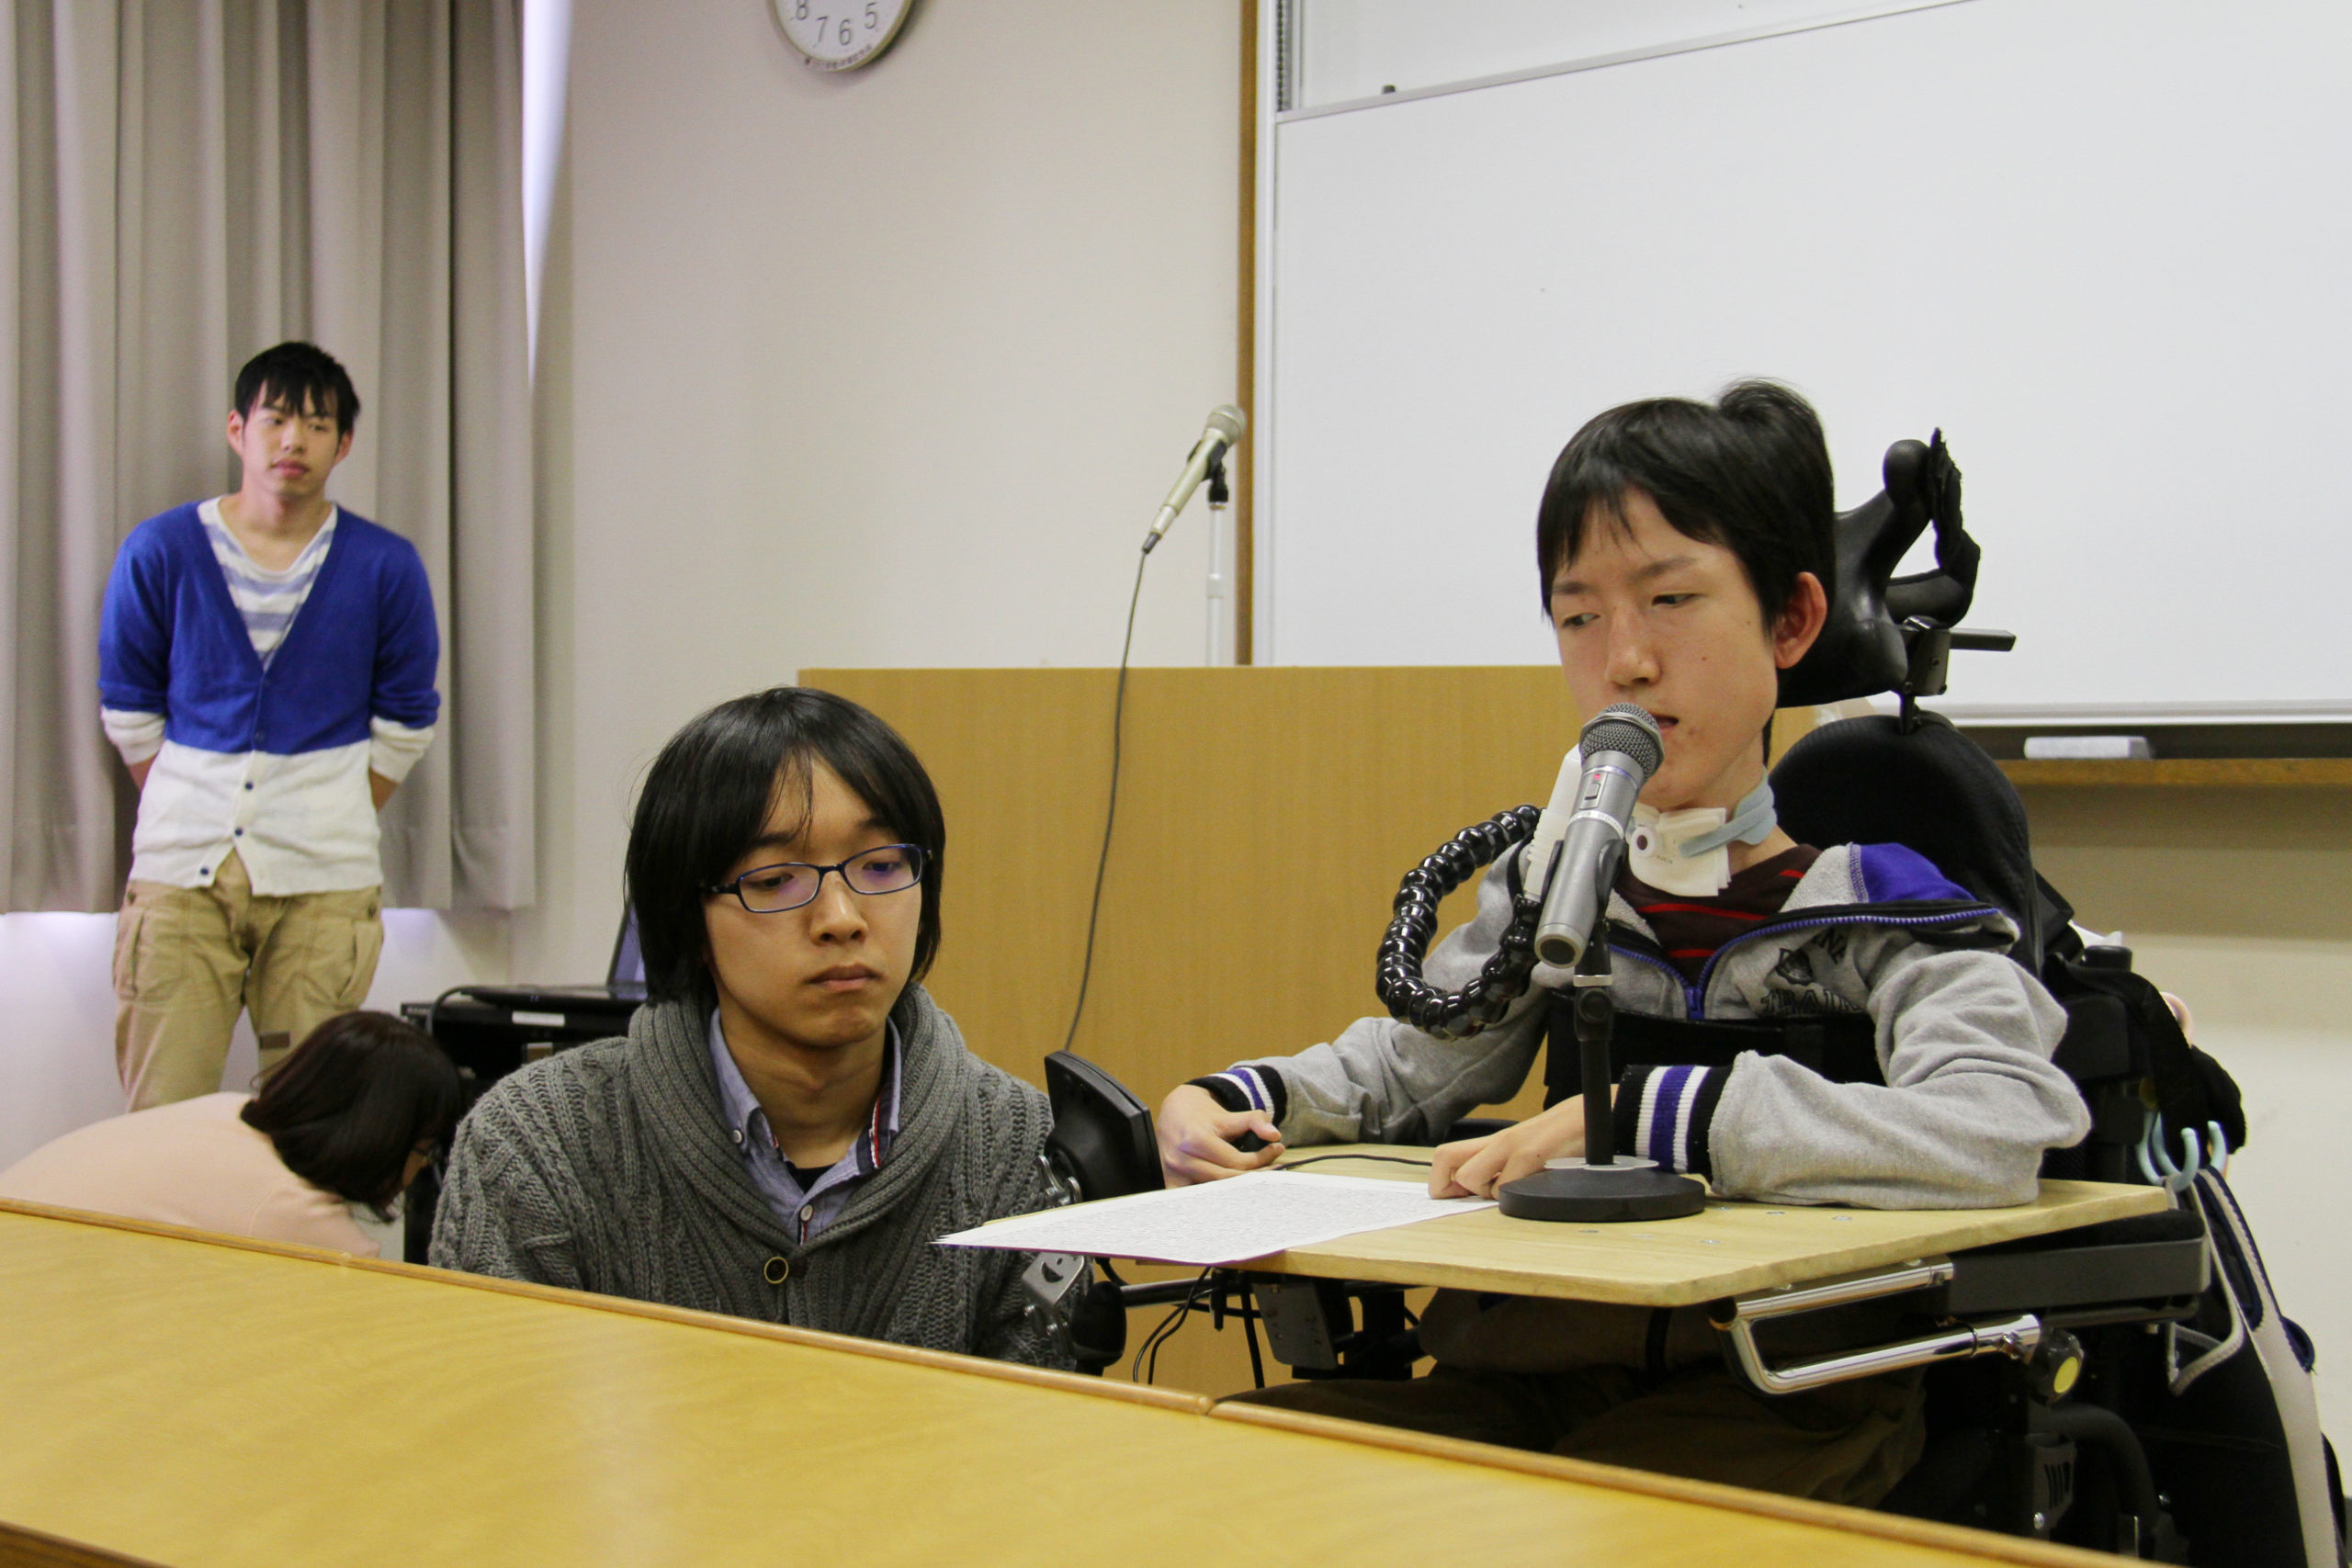 今や人気YouTuberでテレビにも出演されている塩澤さん、この授業での発表をブログにまとめました